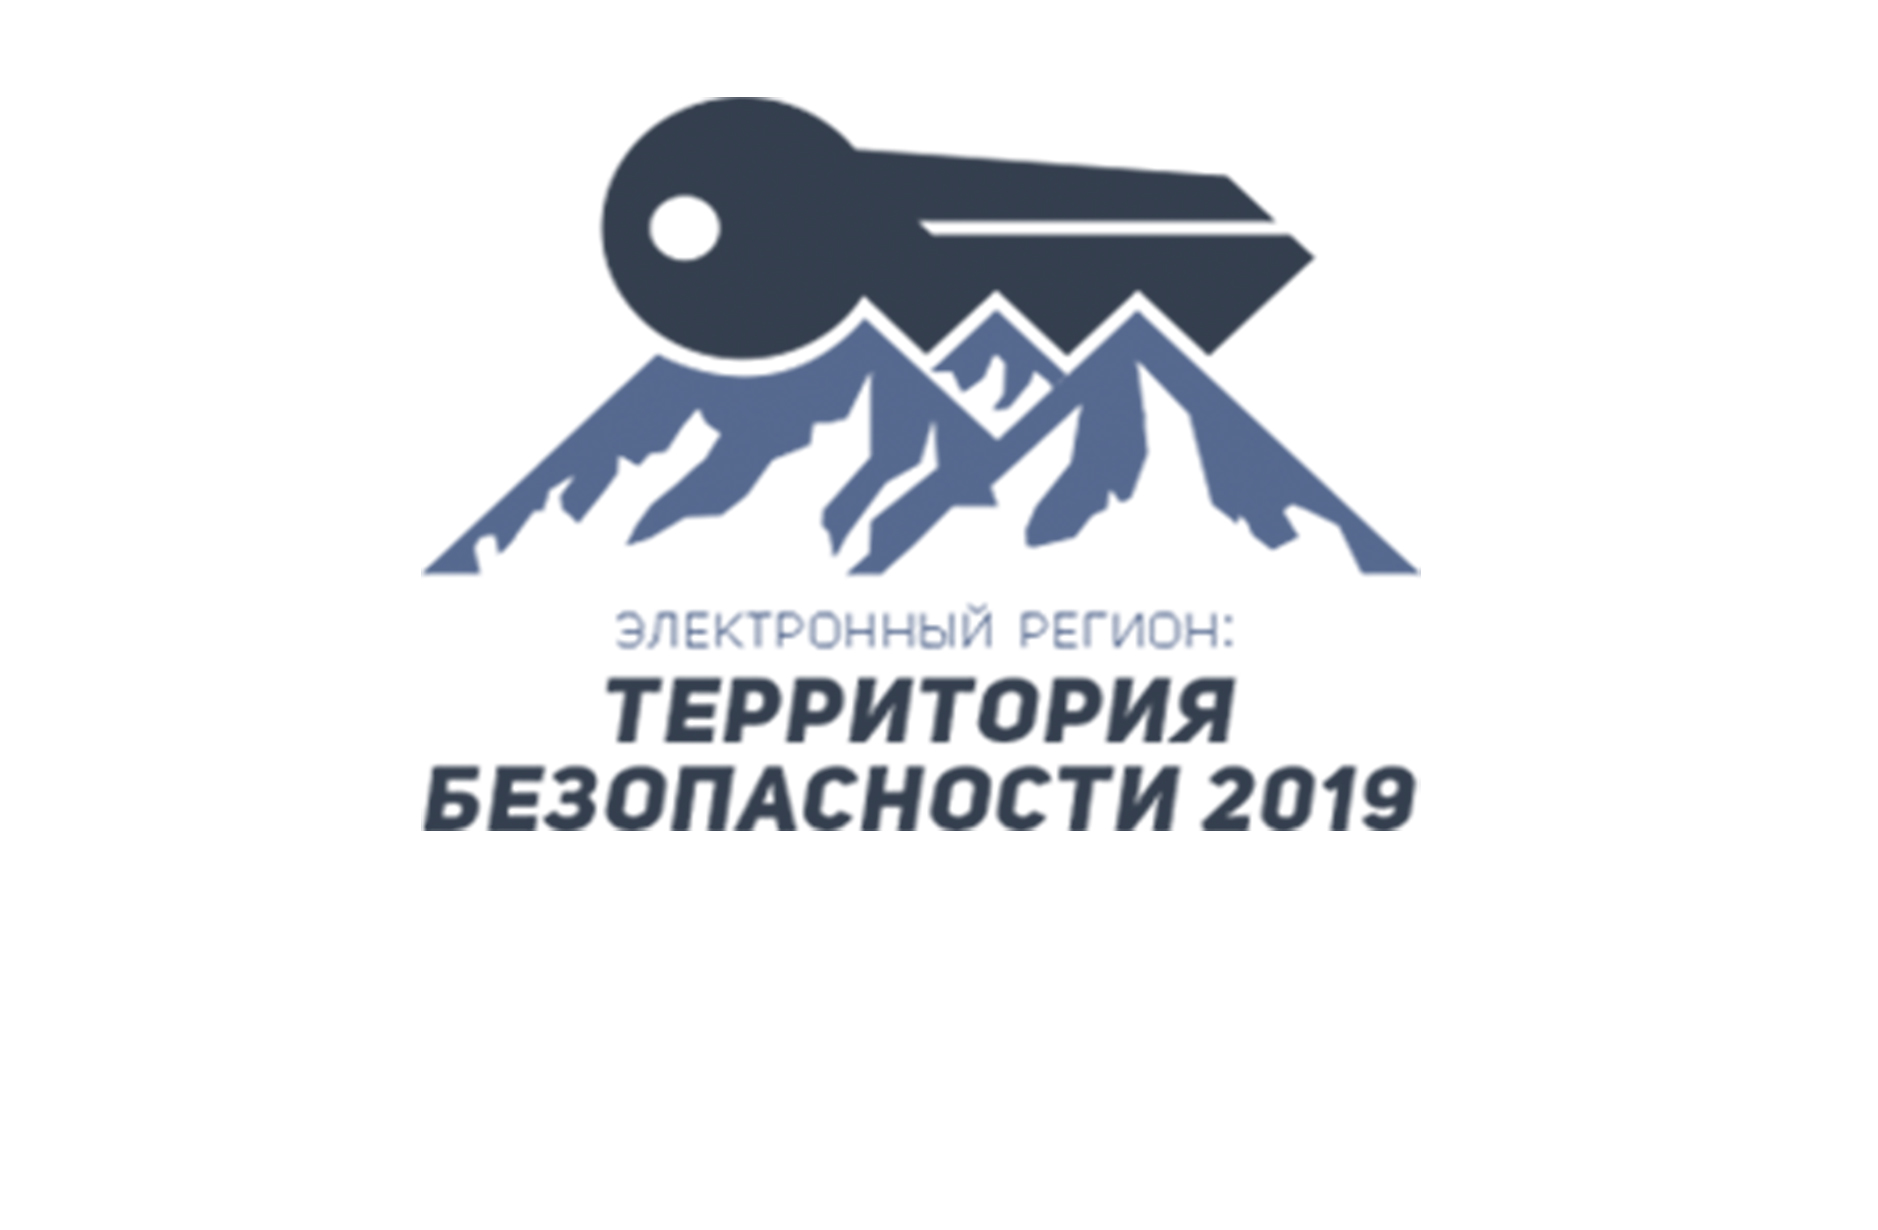 В Кисловодске пройдет конференция по информационной безопасности